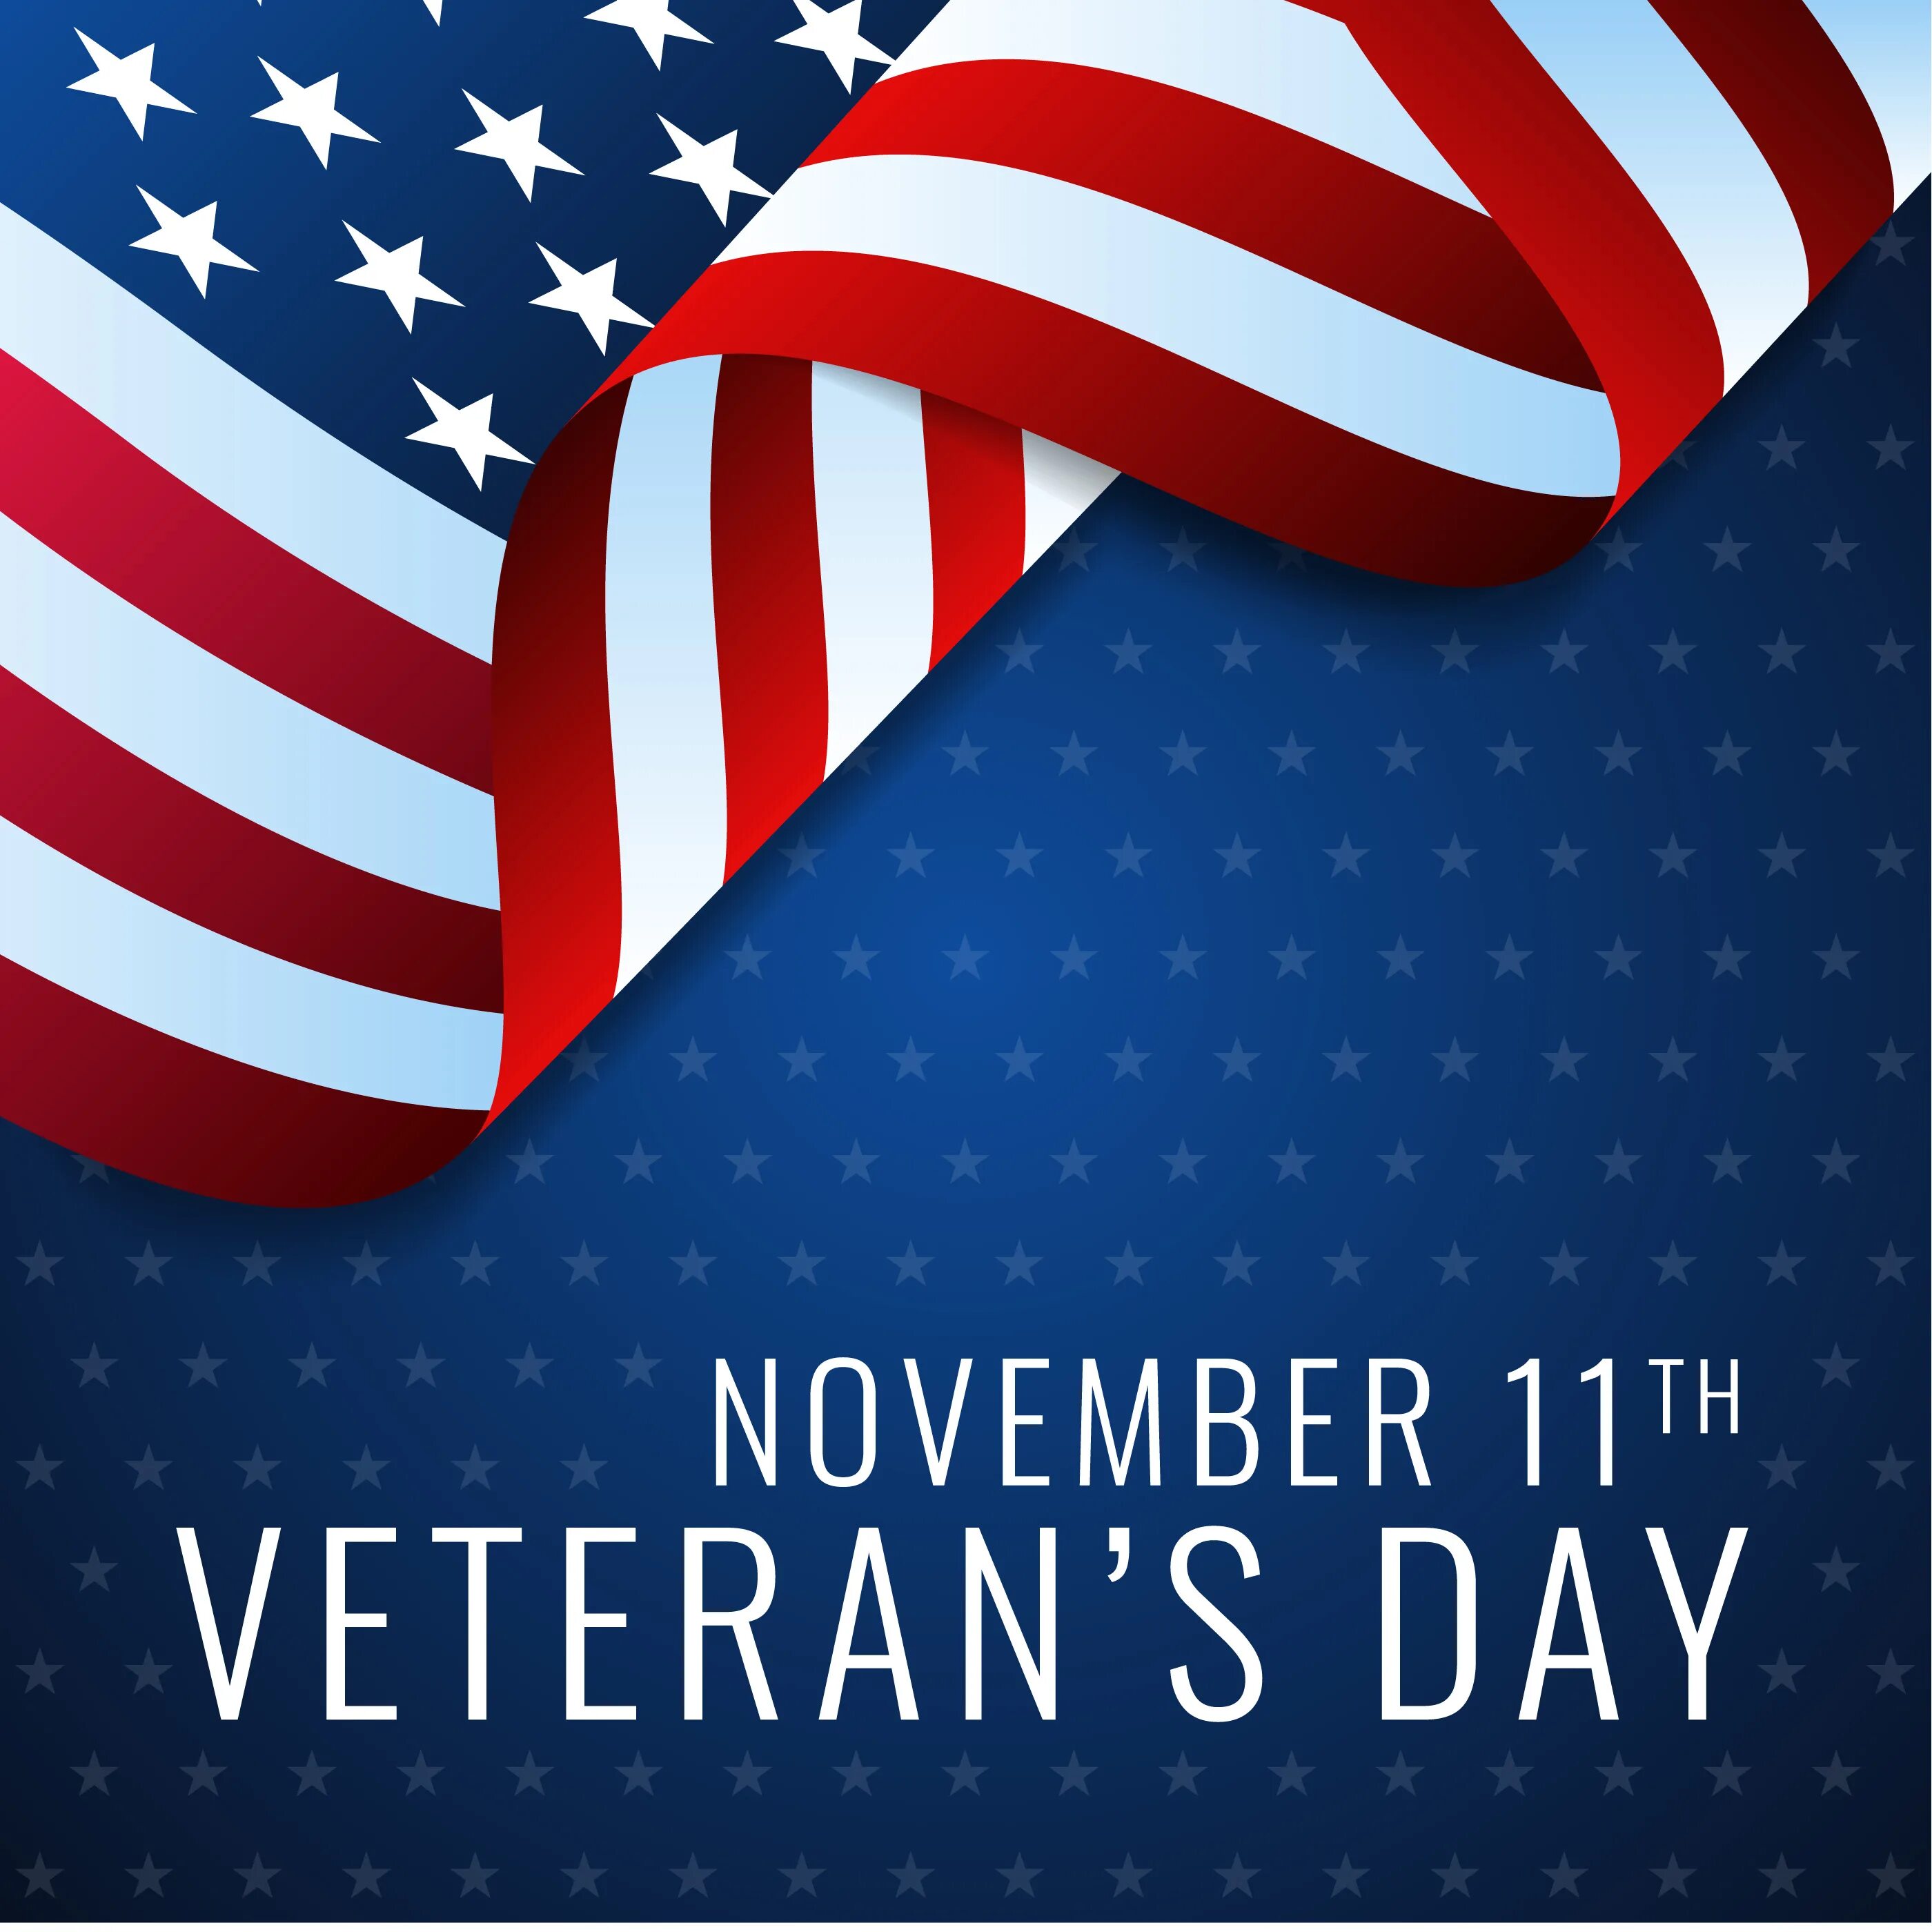 Veterans day. Happy veterans Day. Veterans Day USA. Veteran's Day. Veterans Day in the USA.